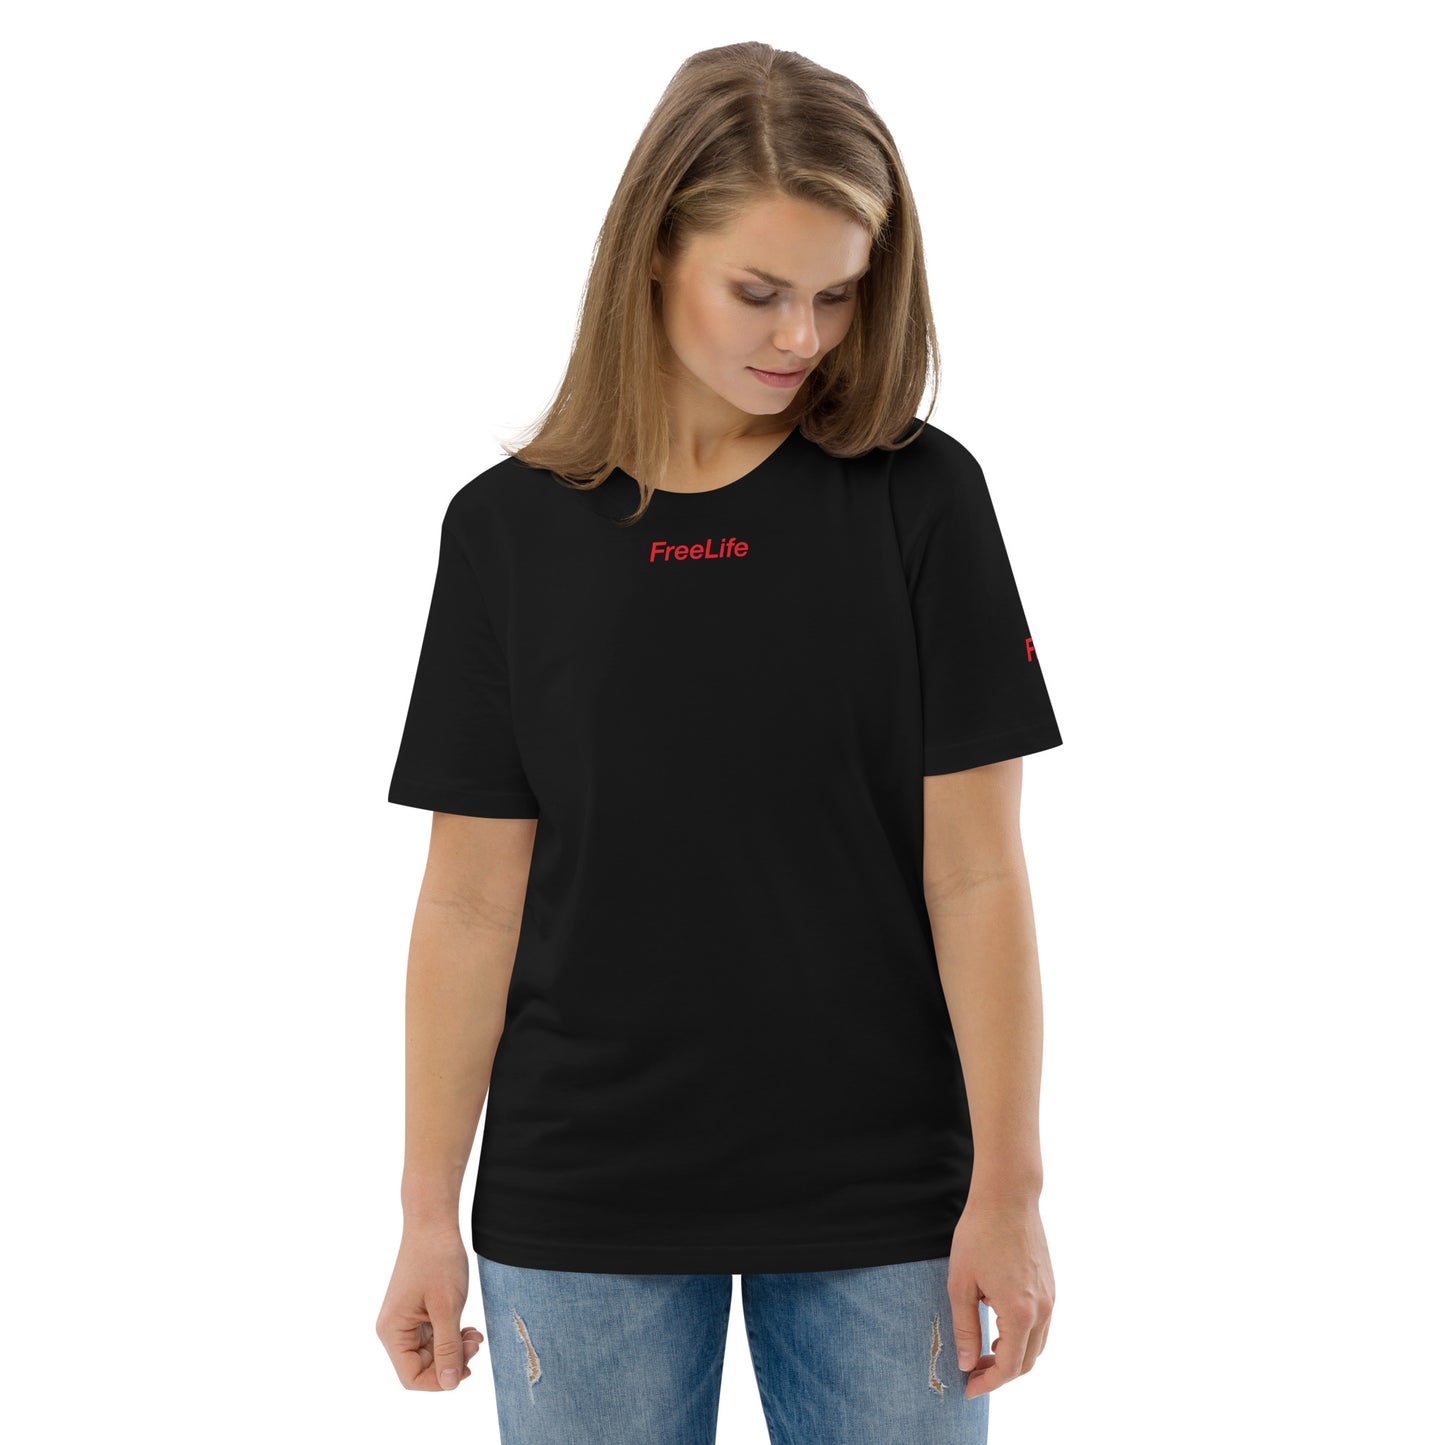 Baumwoll-T-Shirt